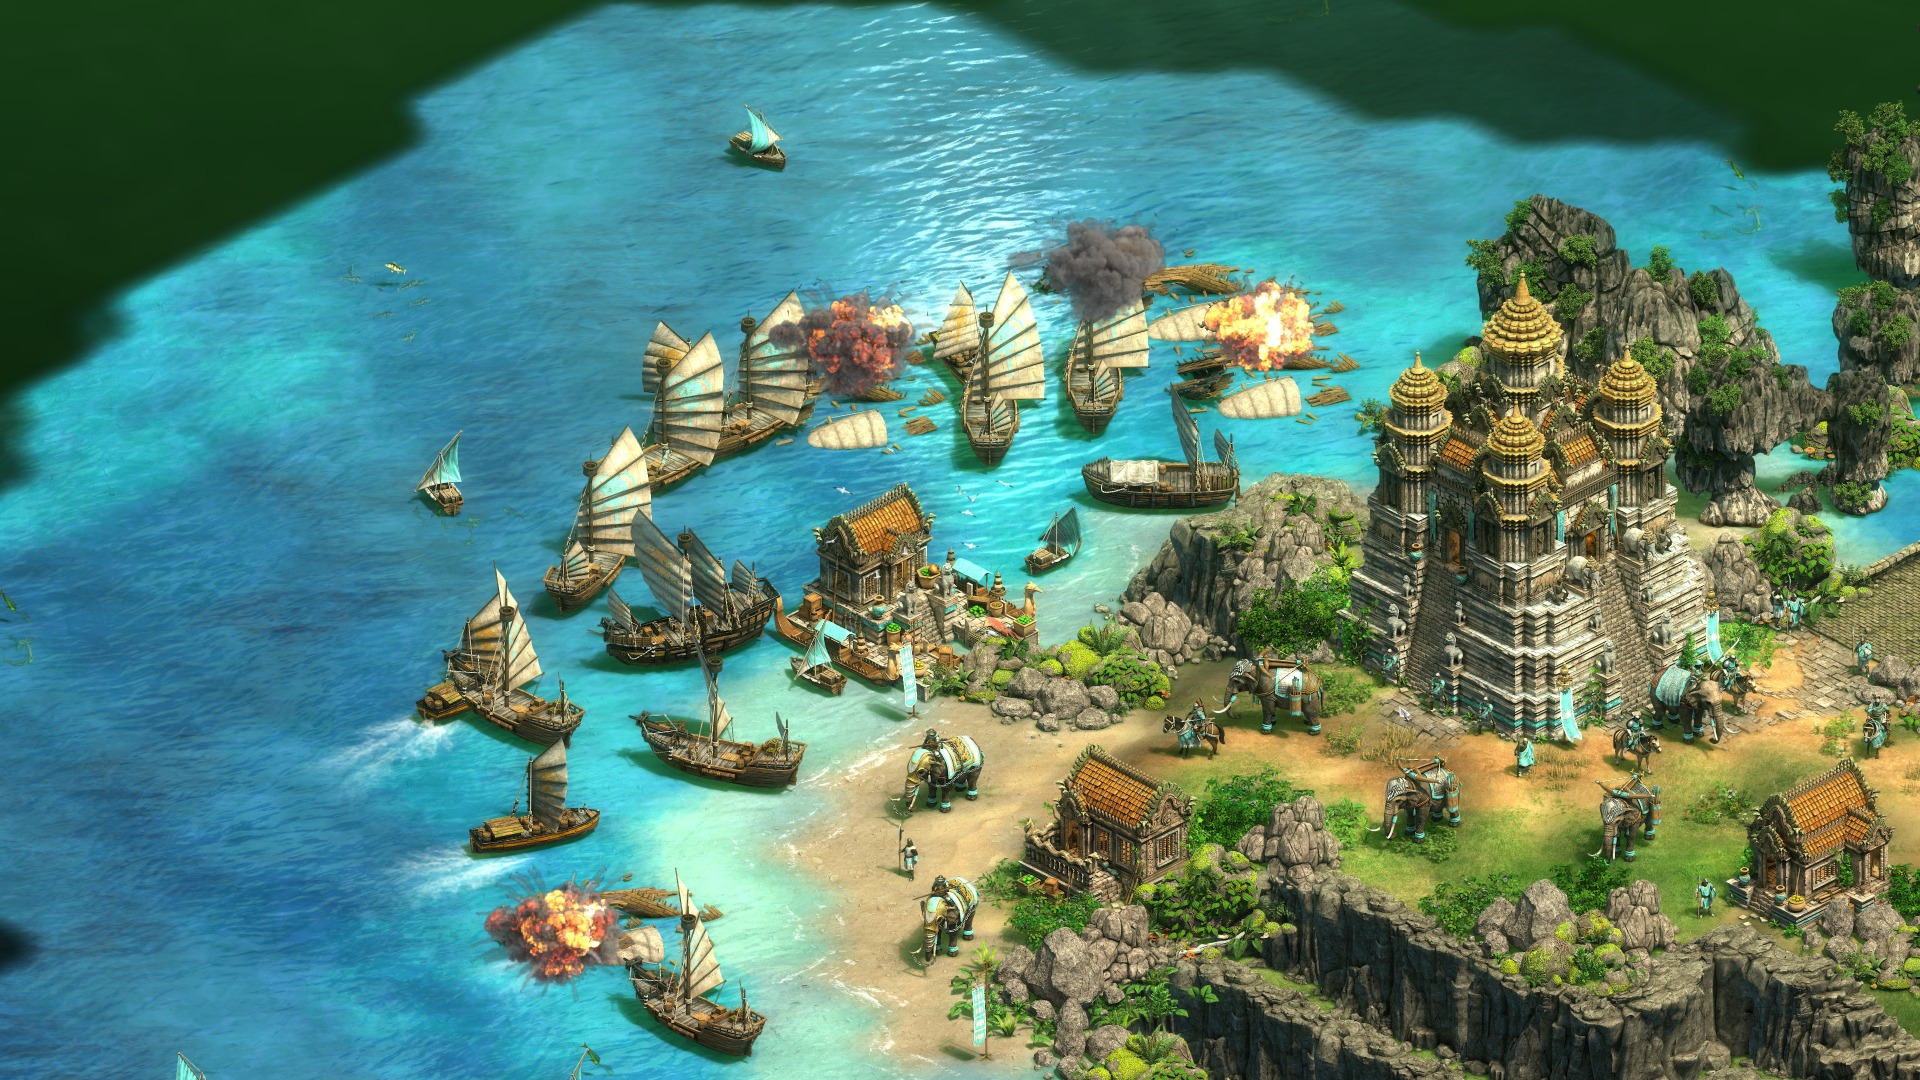 Age Of Empires Ii のアジア大会をマイクロソフトが開催へ 日本を含む8地域で2020年第1四半期より約1年にわたりトーナメントが実施予定